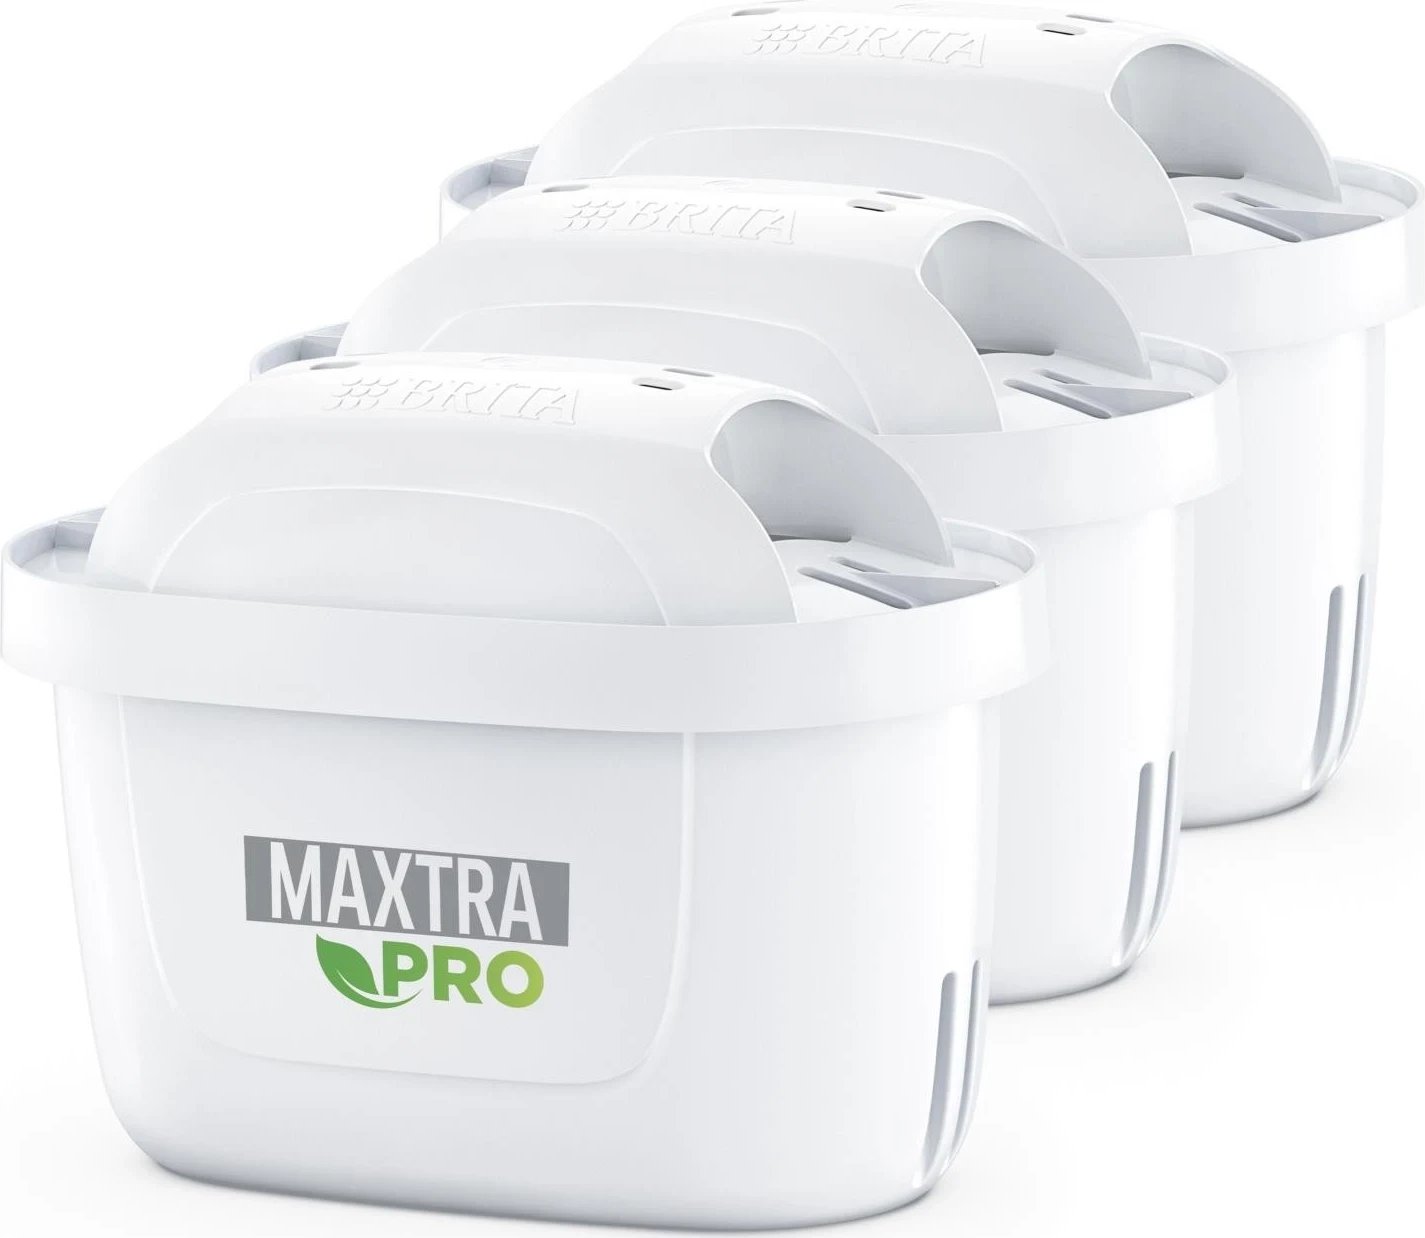 Kartuçë filtruese Brita Maxtra Pro për ujë të fortë, bardhë, 3 copë